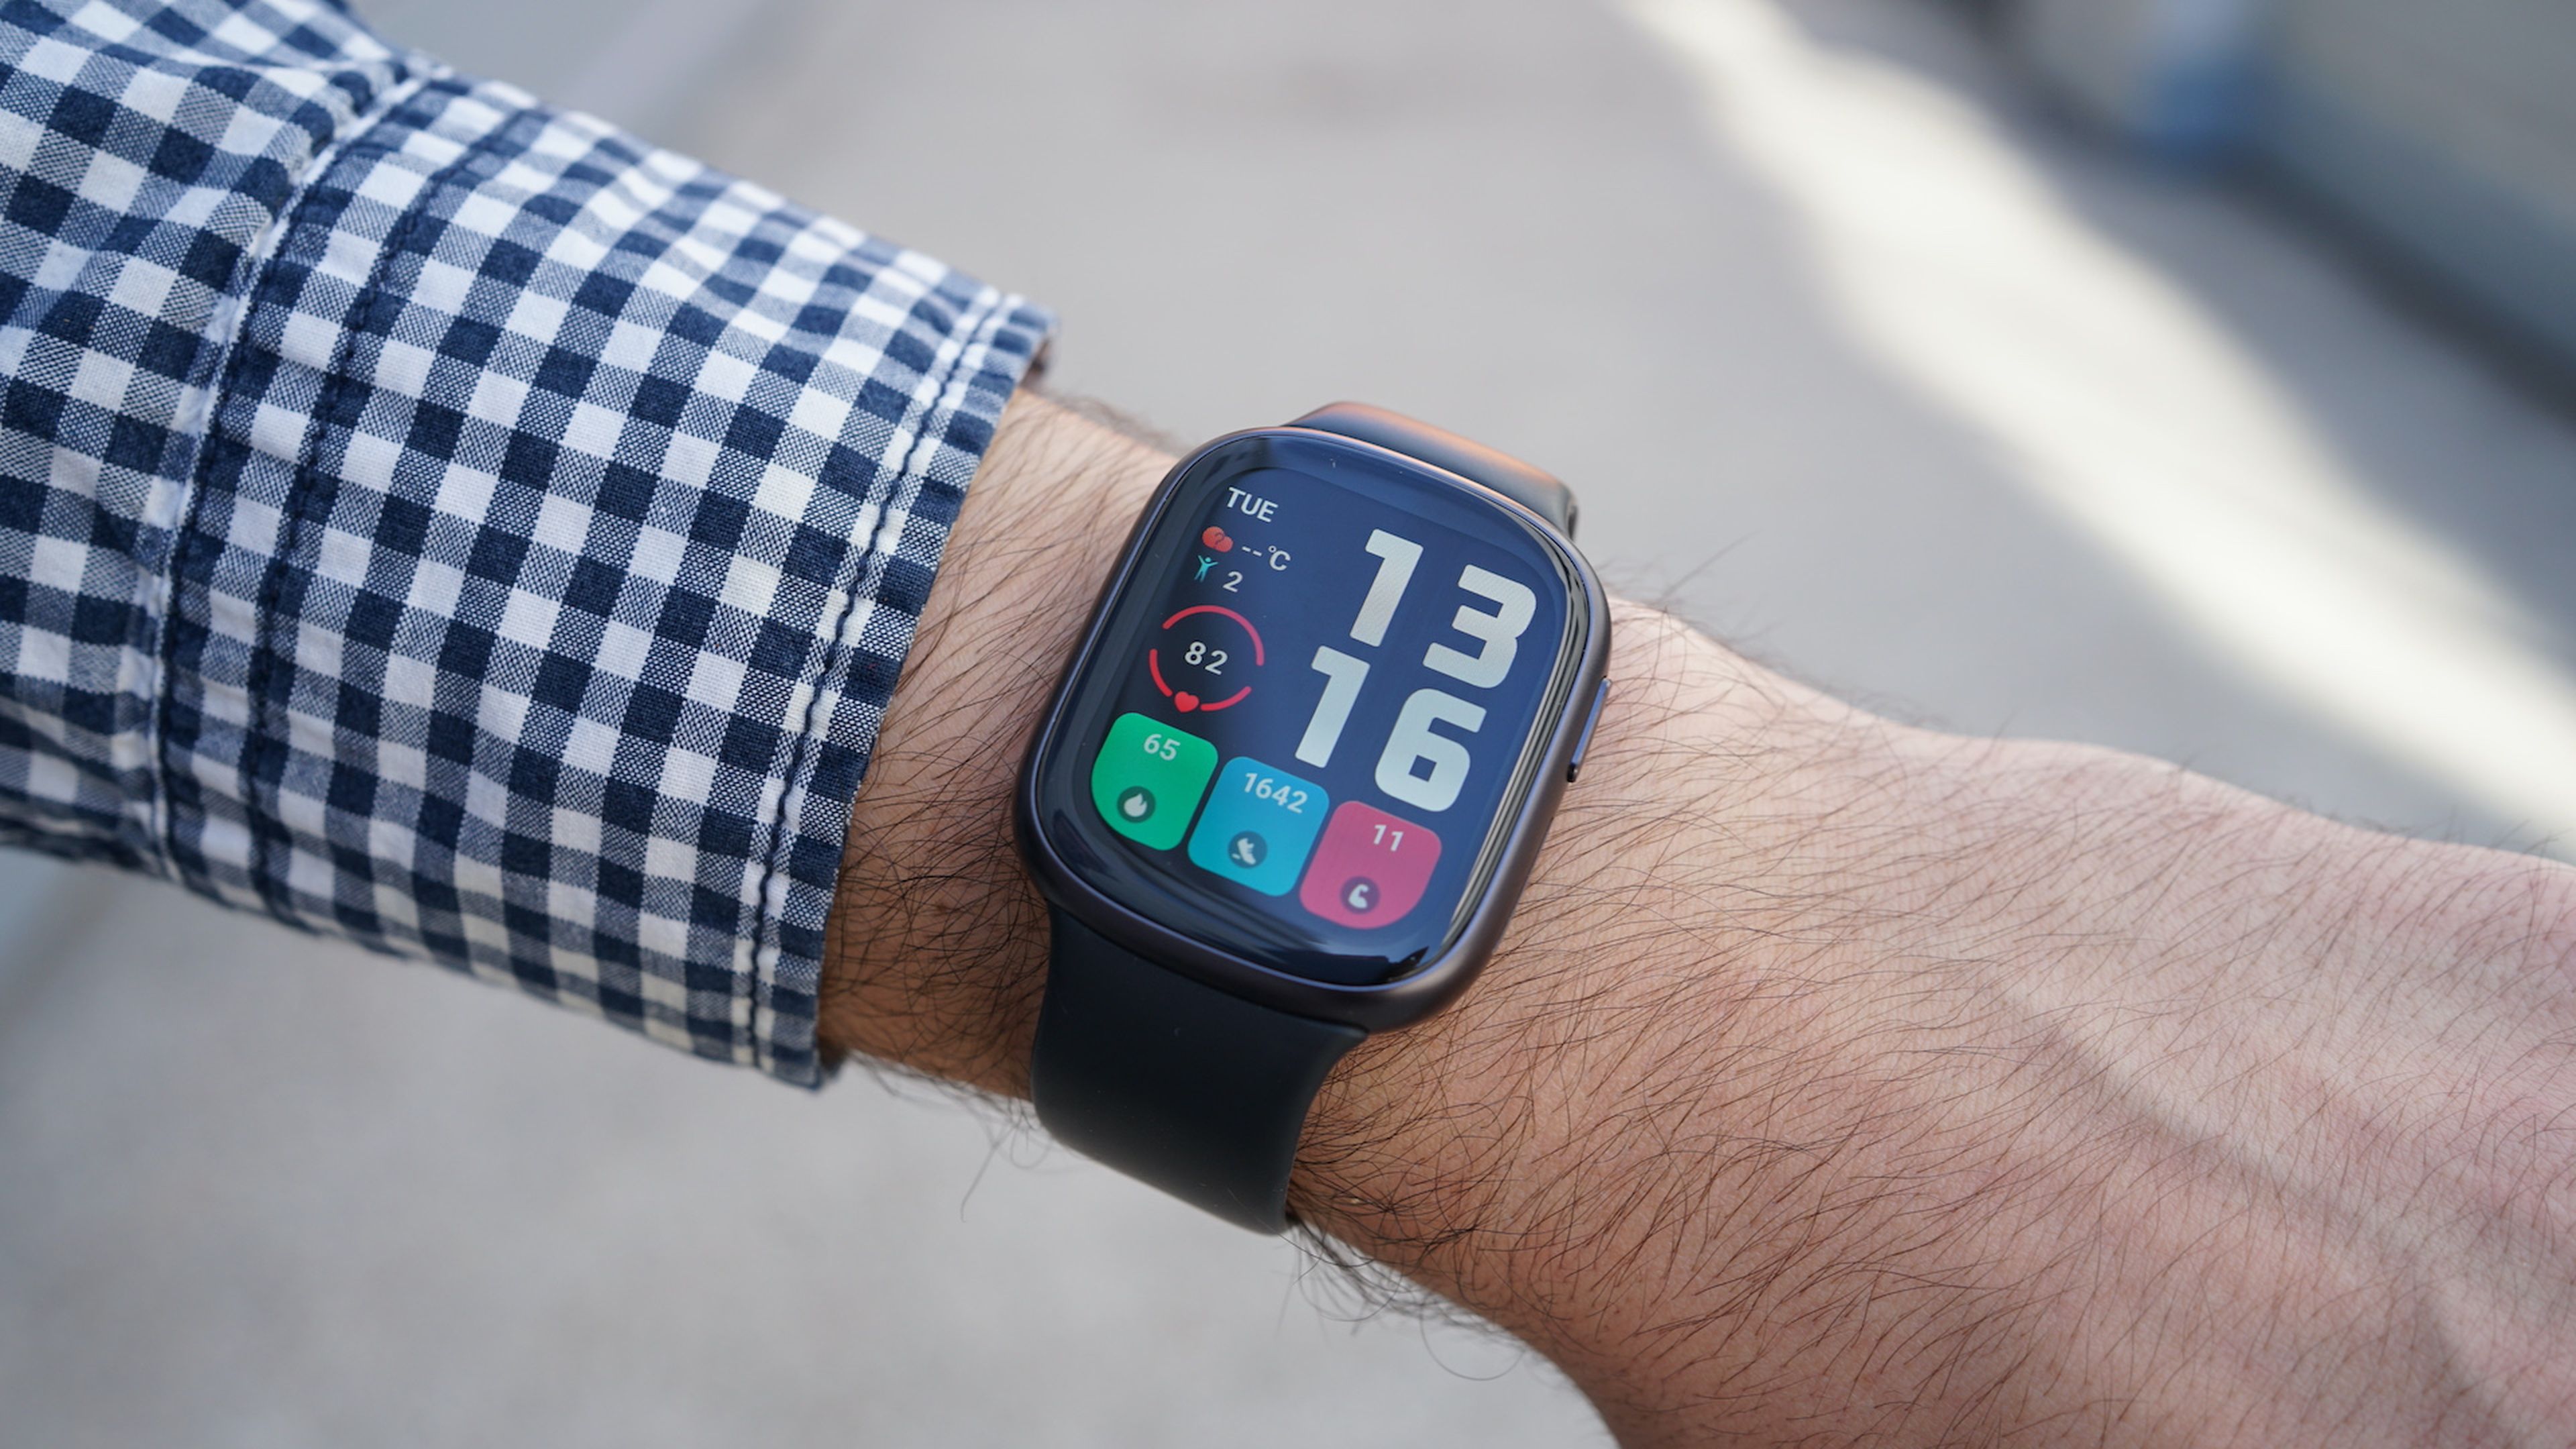 Reloj inteligente smartwatch: qué es y cómo funciona en CENOR